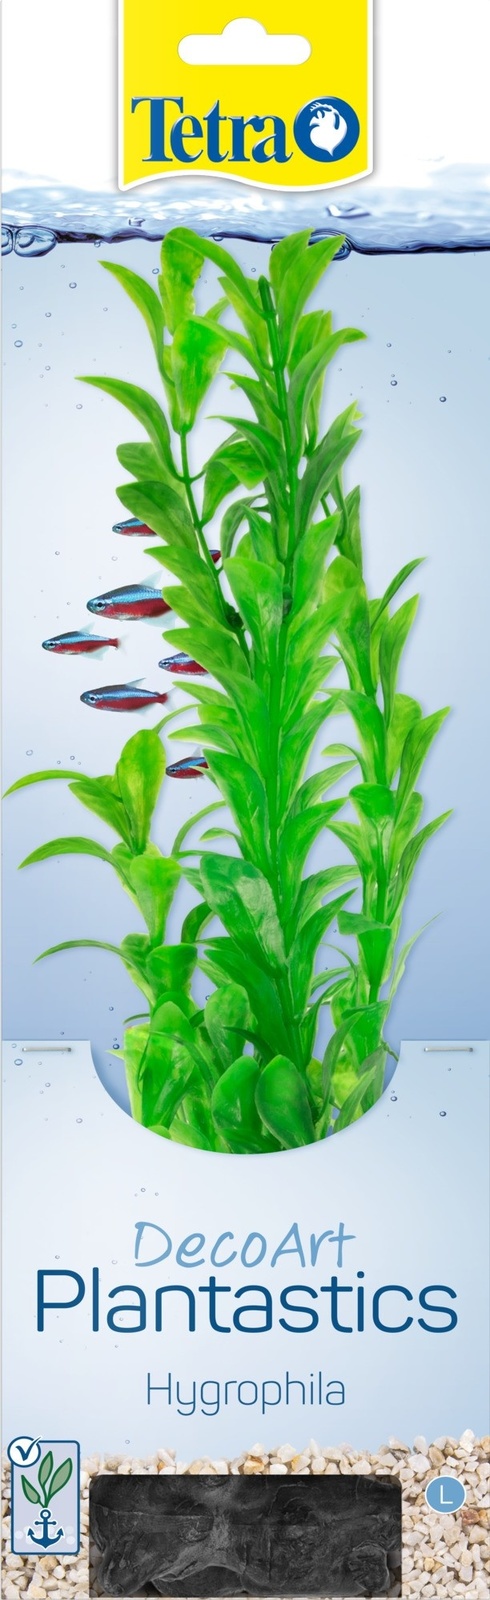 Tetra (оборудование) растение DecoArt Plantastics Hygrophila 30 см (115 г)